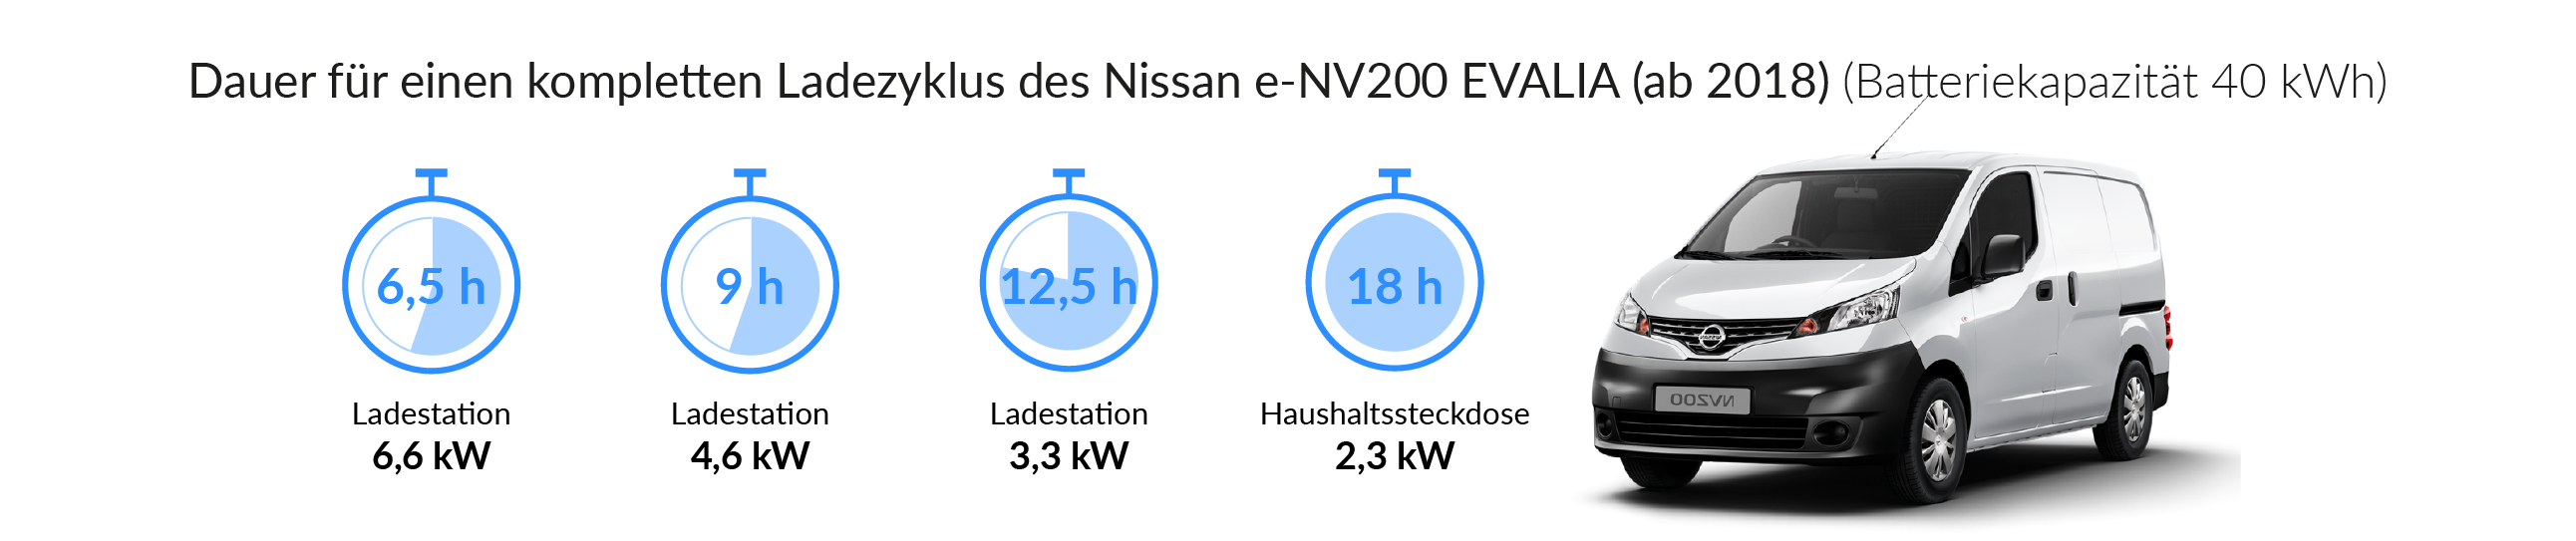 Ladezeiten des NISSAN EVALIA e-NV 200